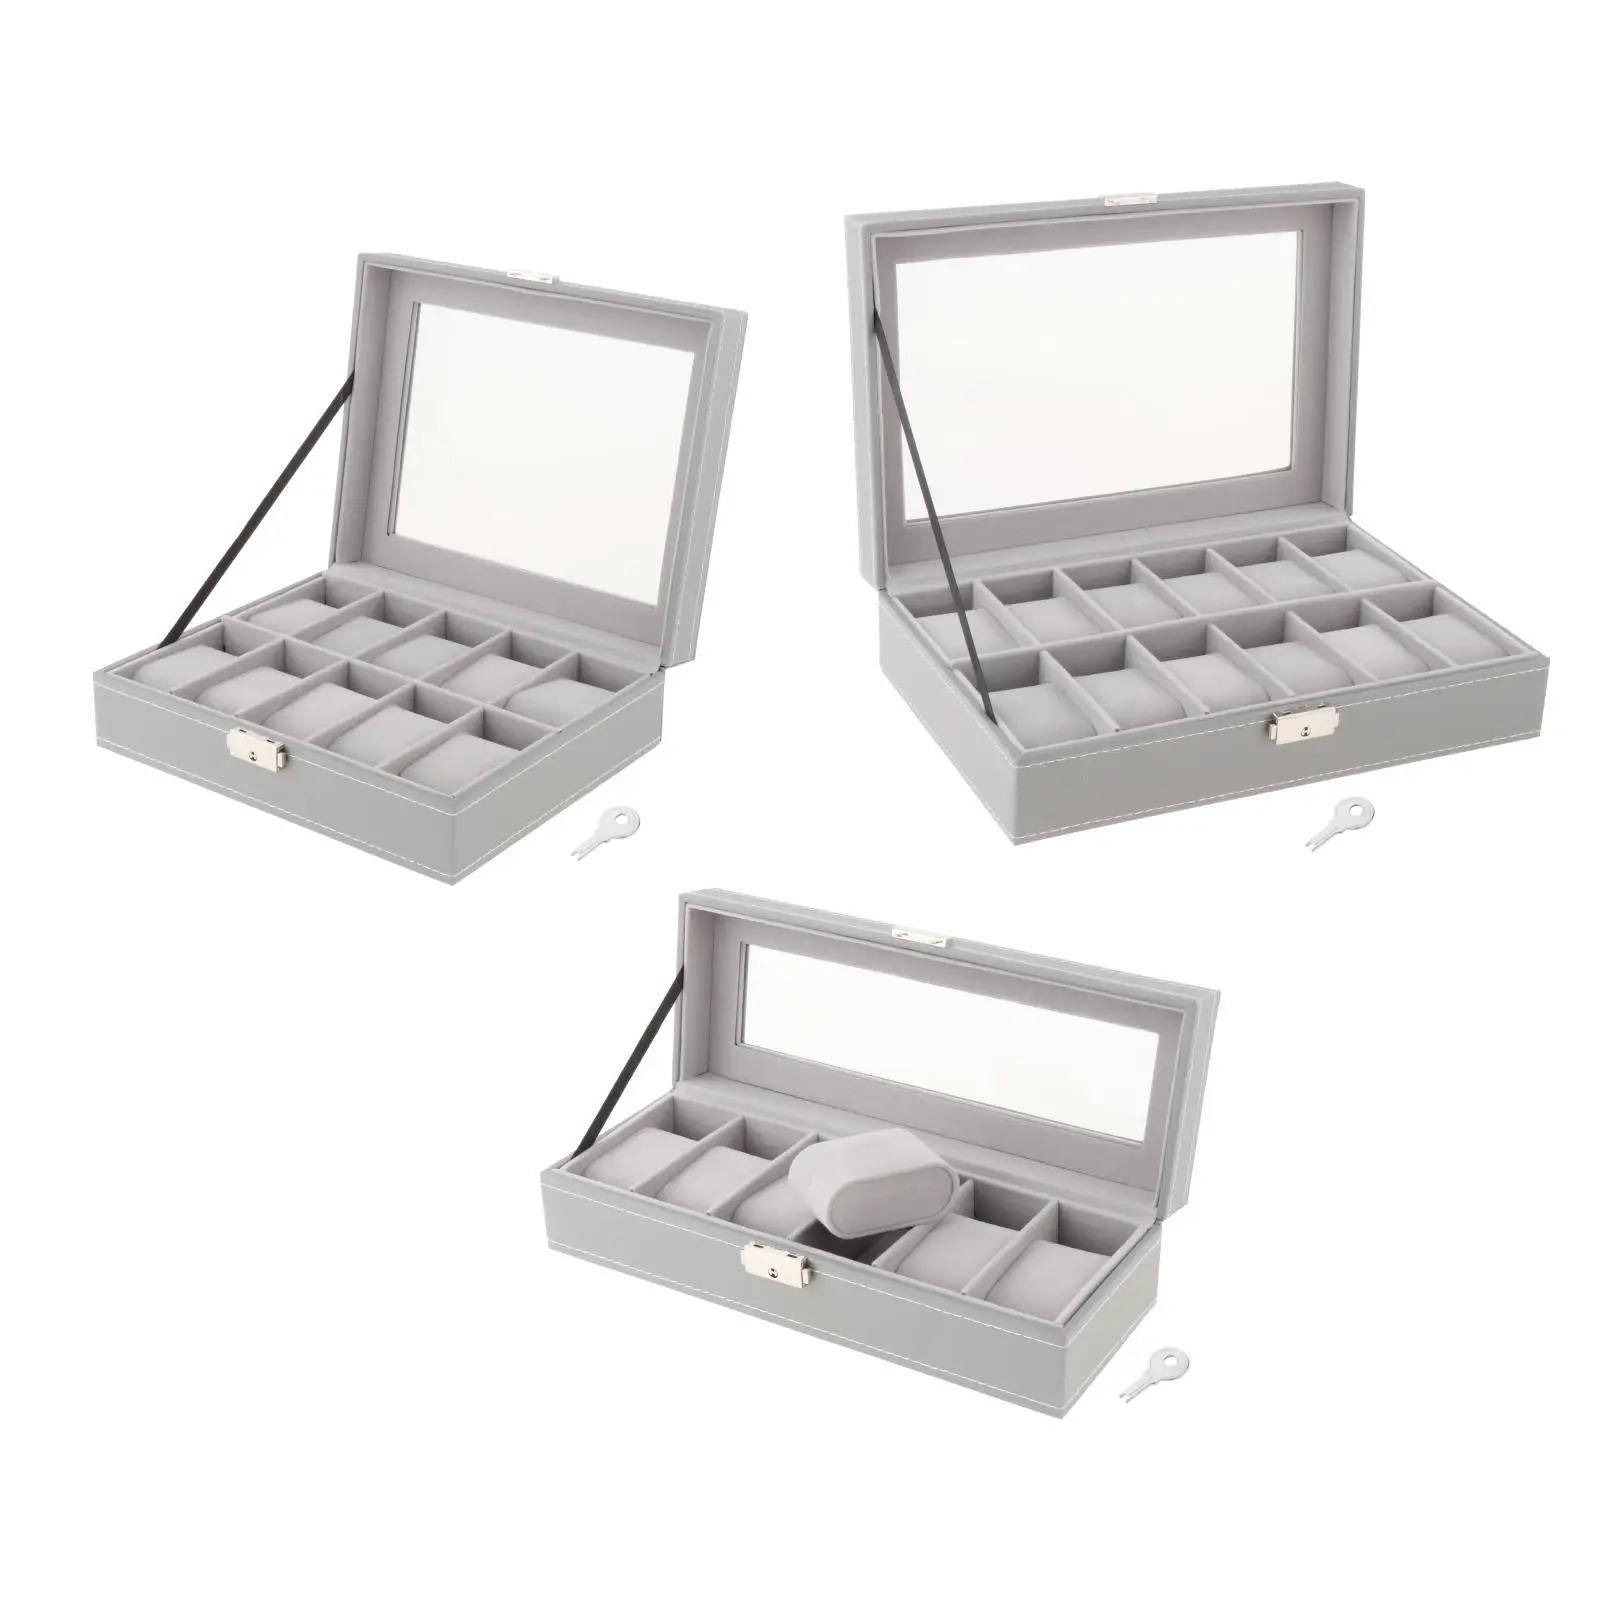 Watch Display Storage Box Jewelry Collection Case Organizer Holder